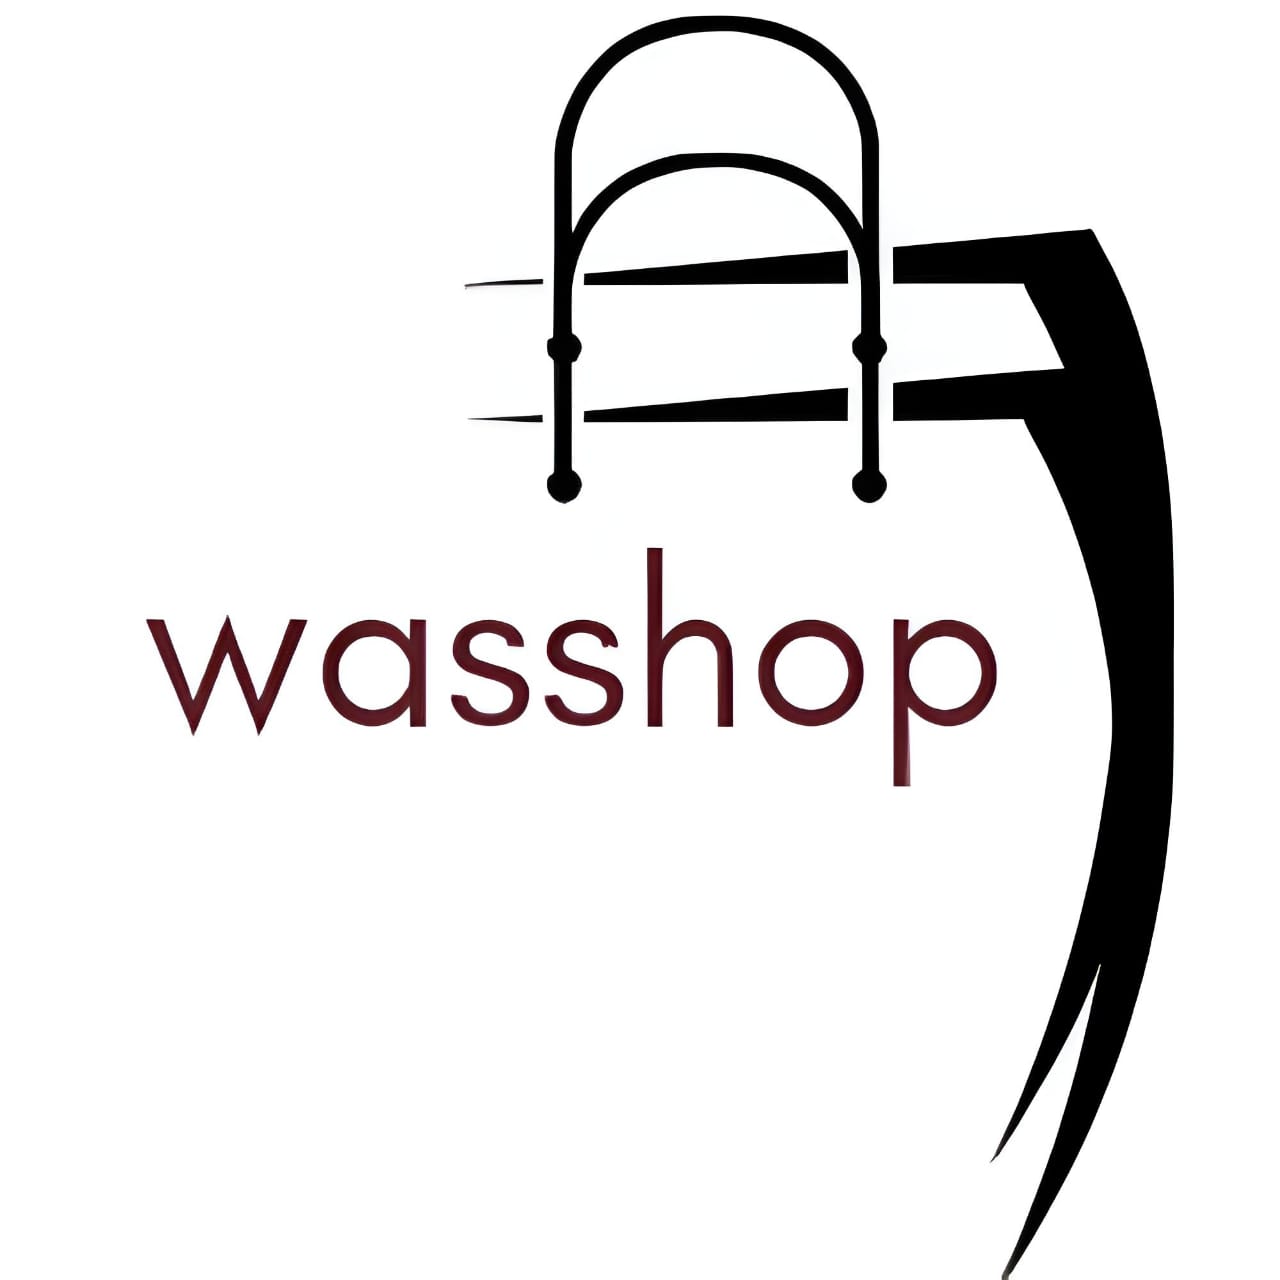 Wasshop